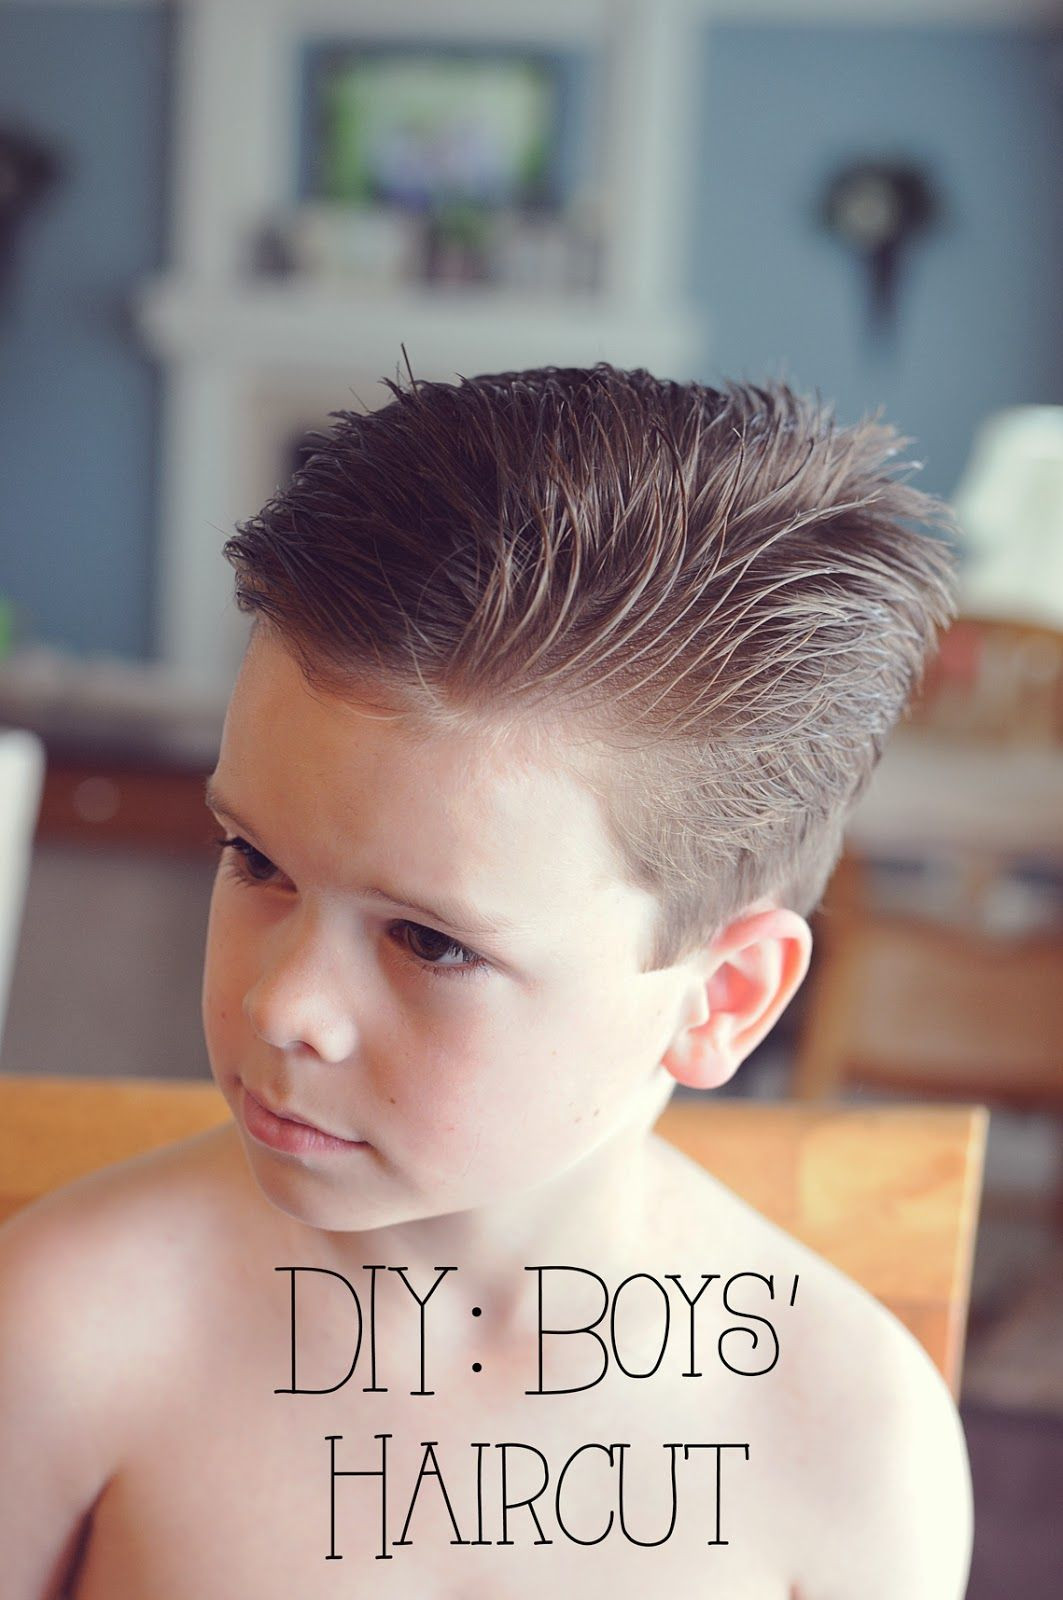 DIY Boys Haircuts
 My 4 Misters & Their Sister DIY Boys Haircut